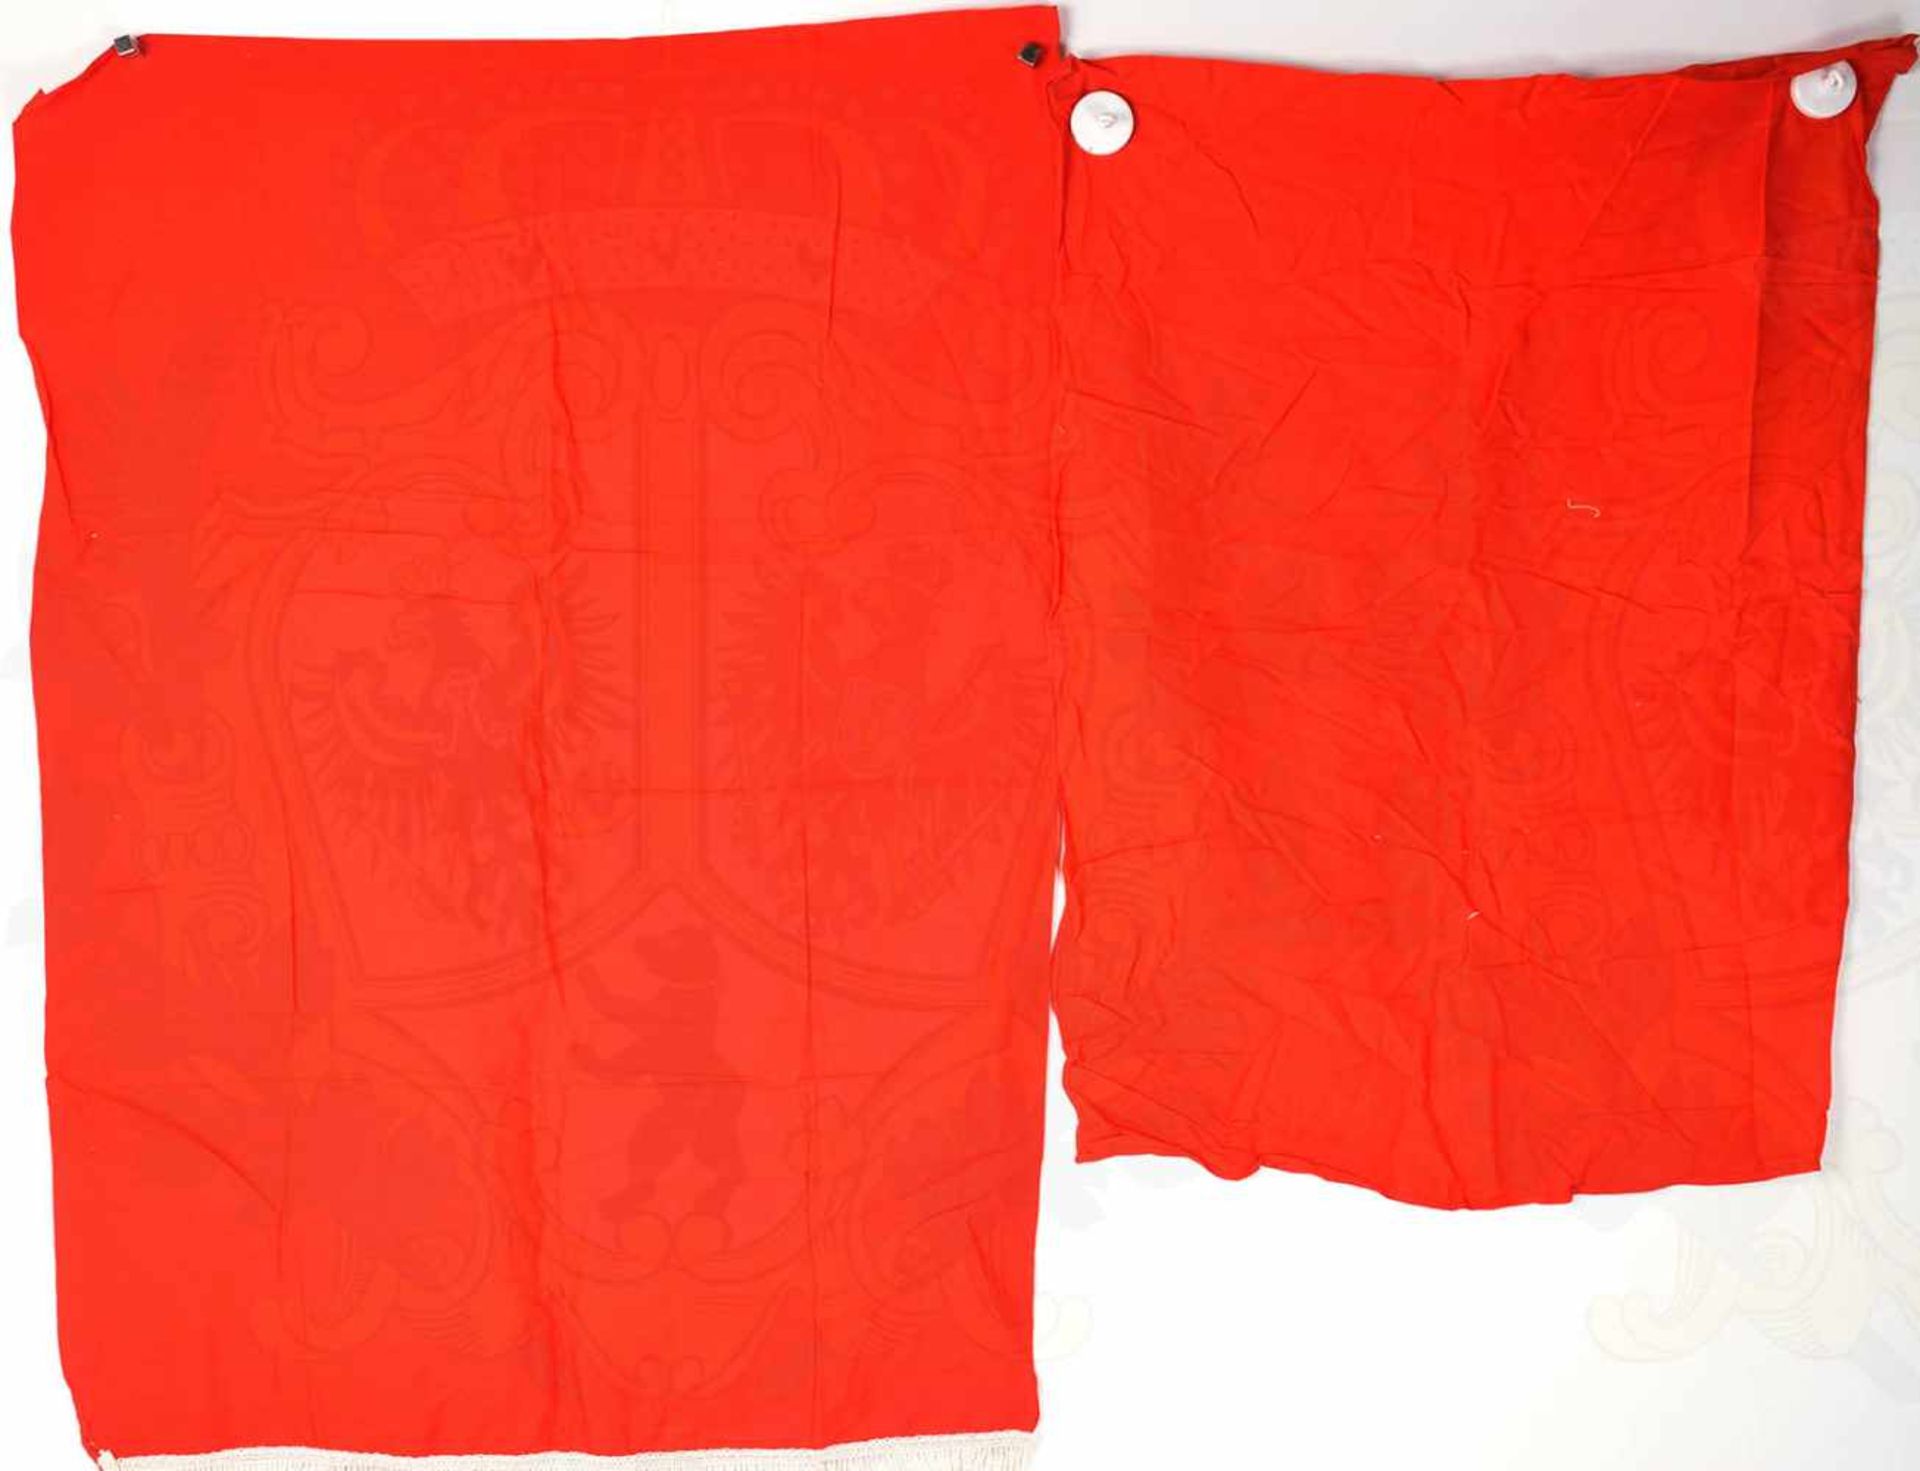 10 FAHNEN, davon 5 Saalfahnen, rotes Tuch, mittig Einstichpunkte f. weißen Spiegel des HK, dieser